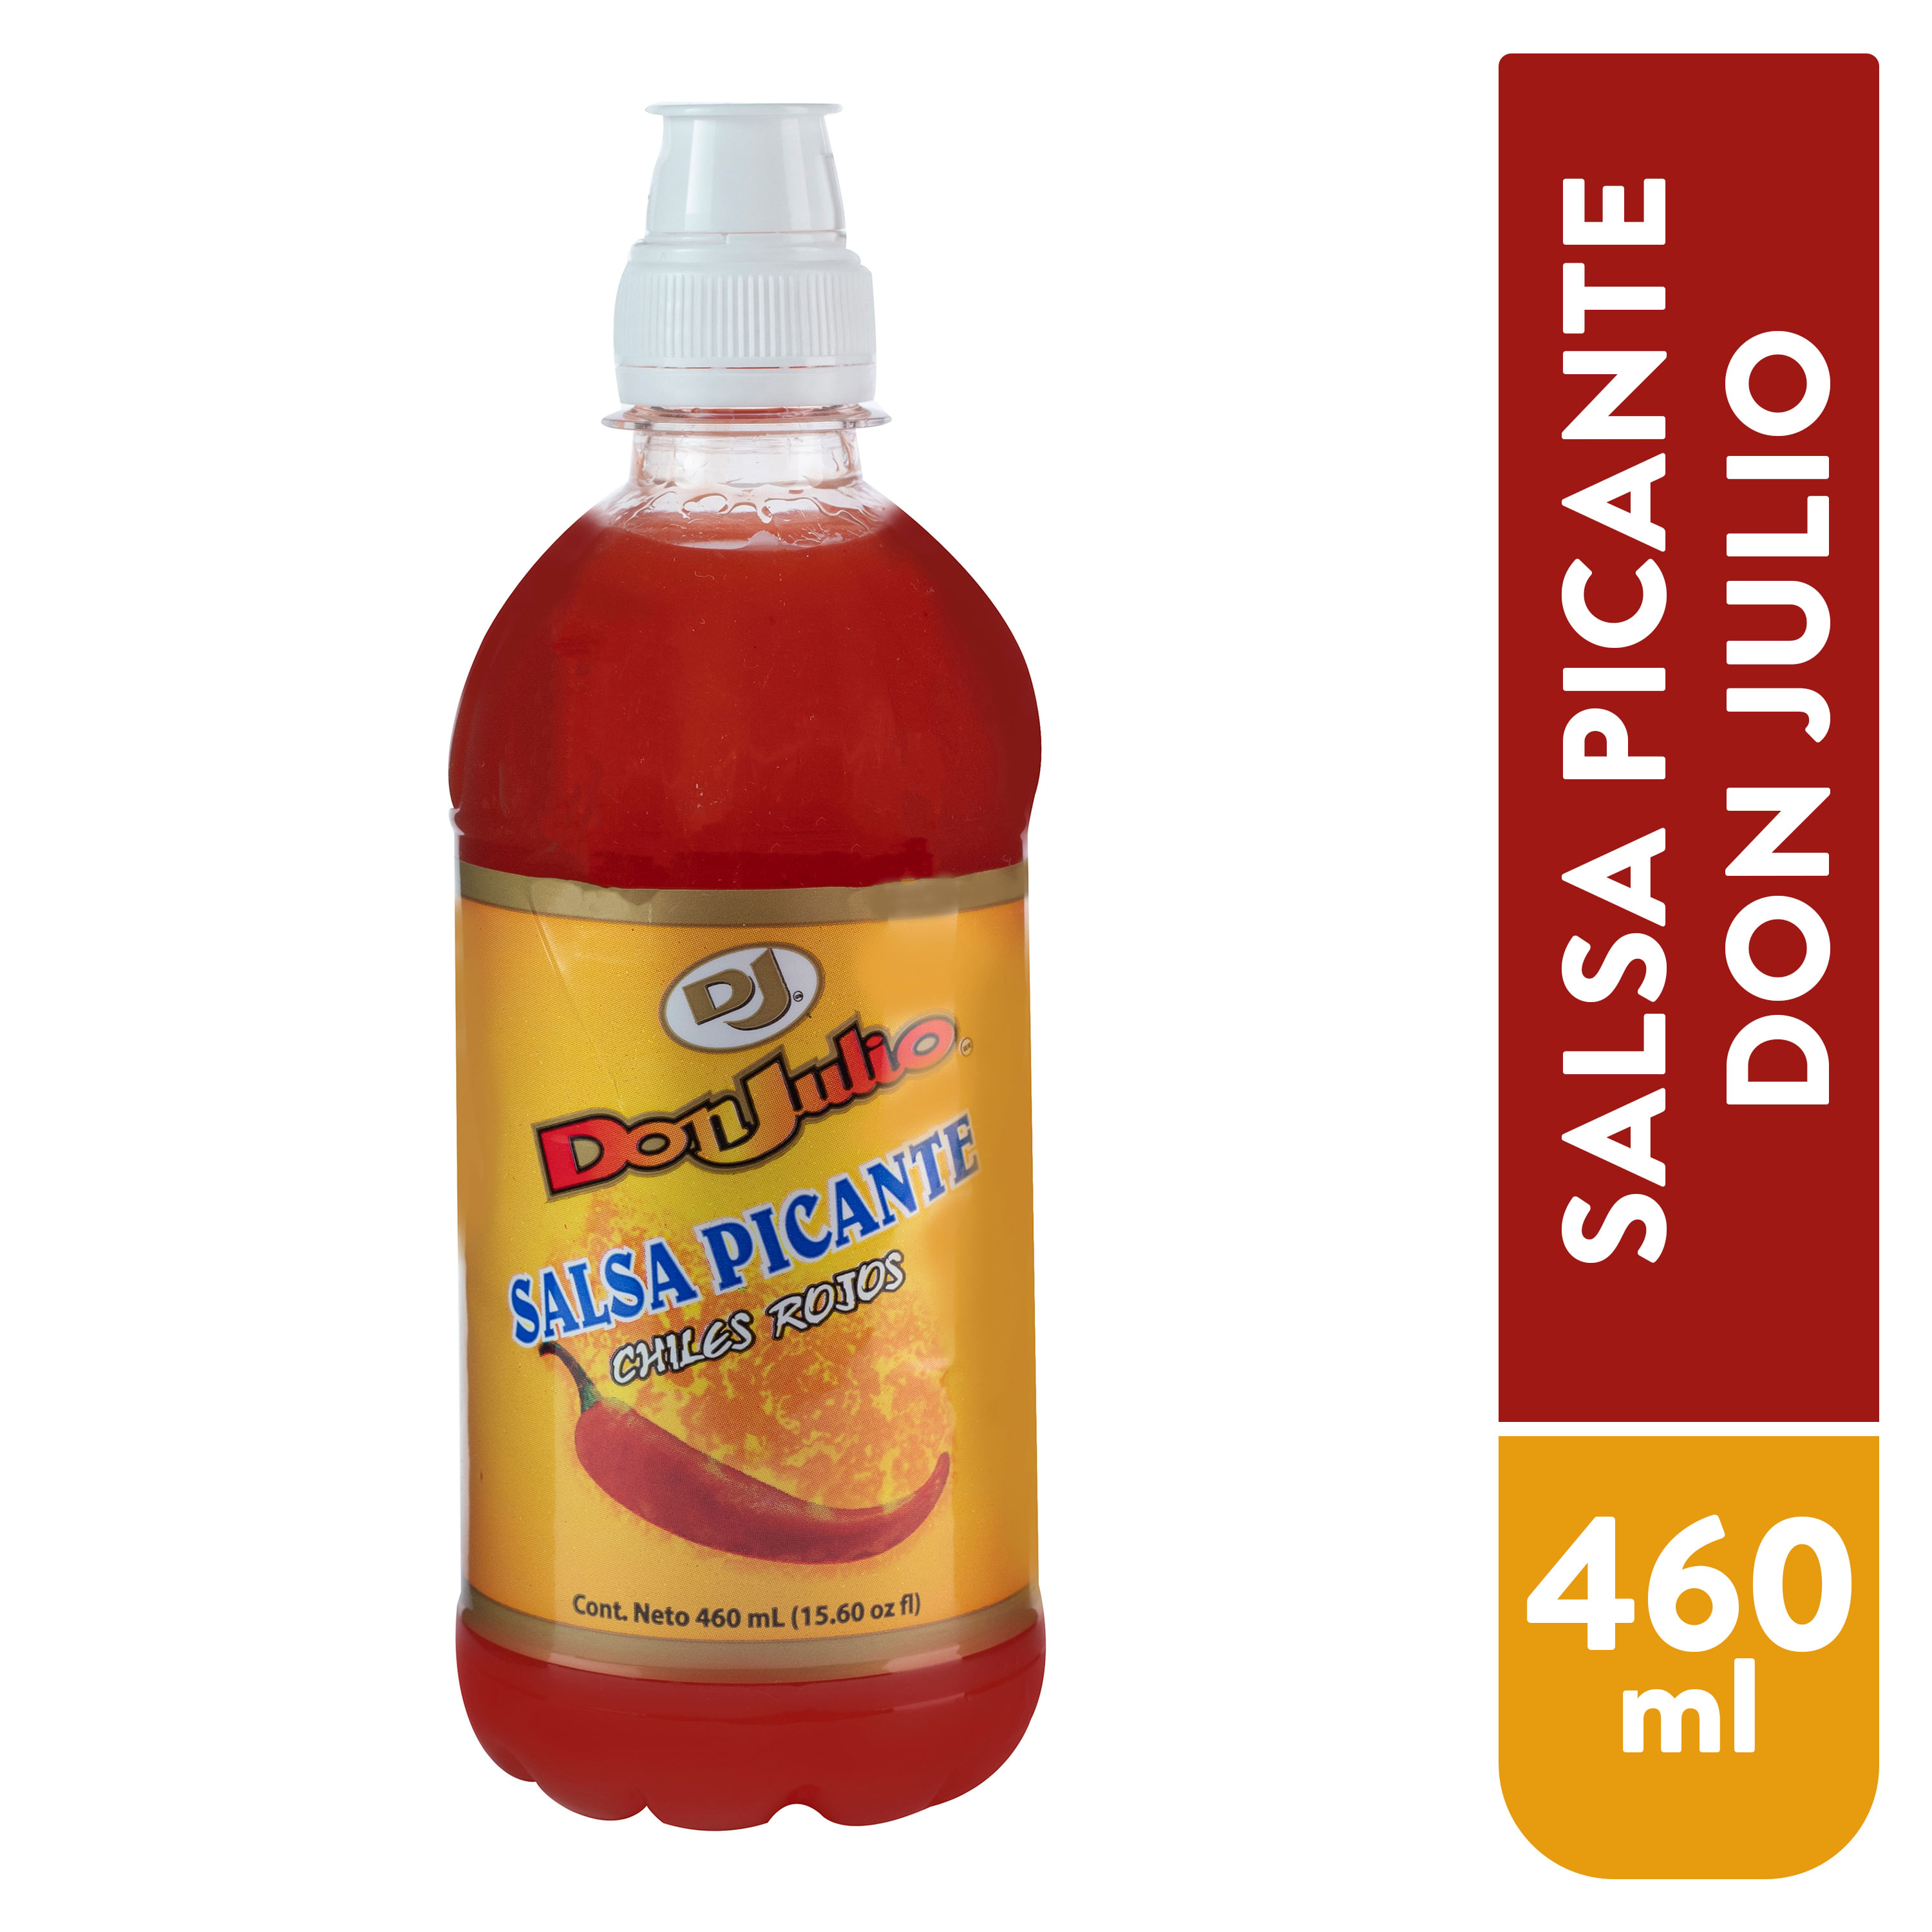 Salsa-Don-Julio-Picante-Chile-Rojo-460Ml-1-2890